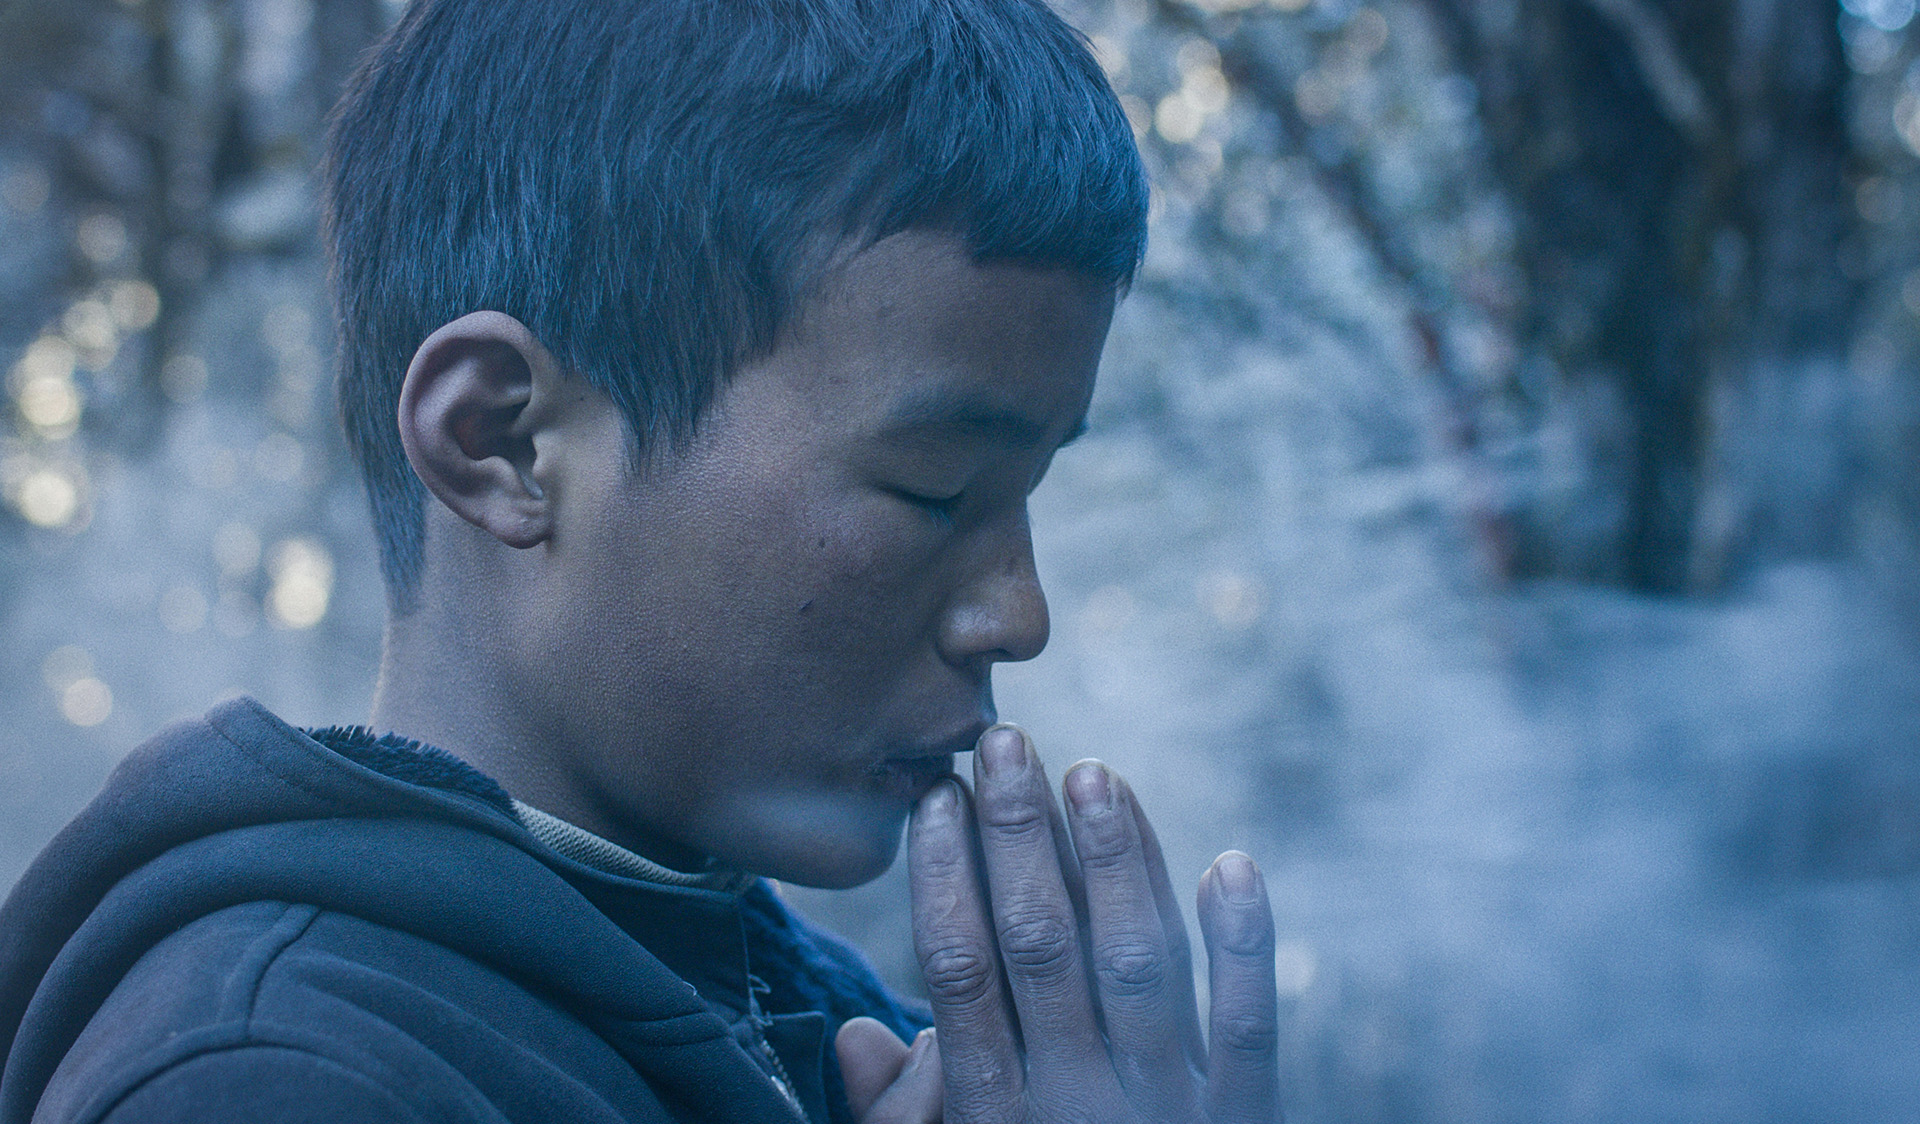 Chłopiec modli się z zamkniętymi oczami. Jego złożone dłonie dotykają jego ust.